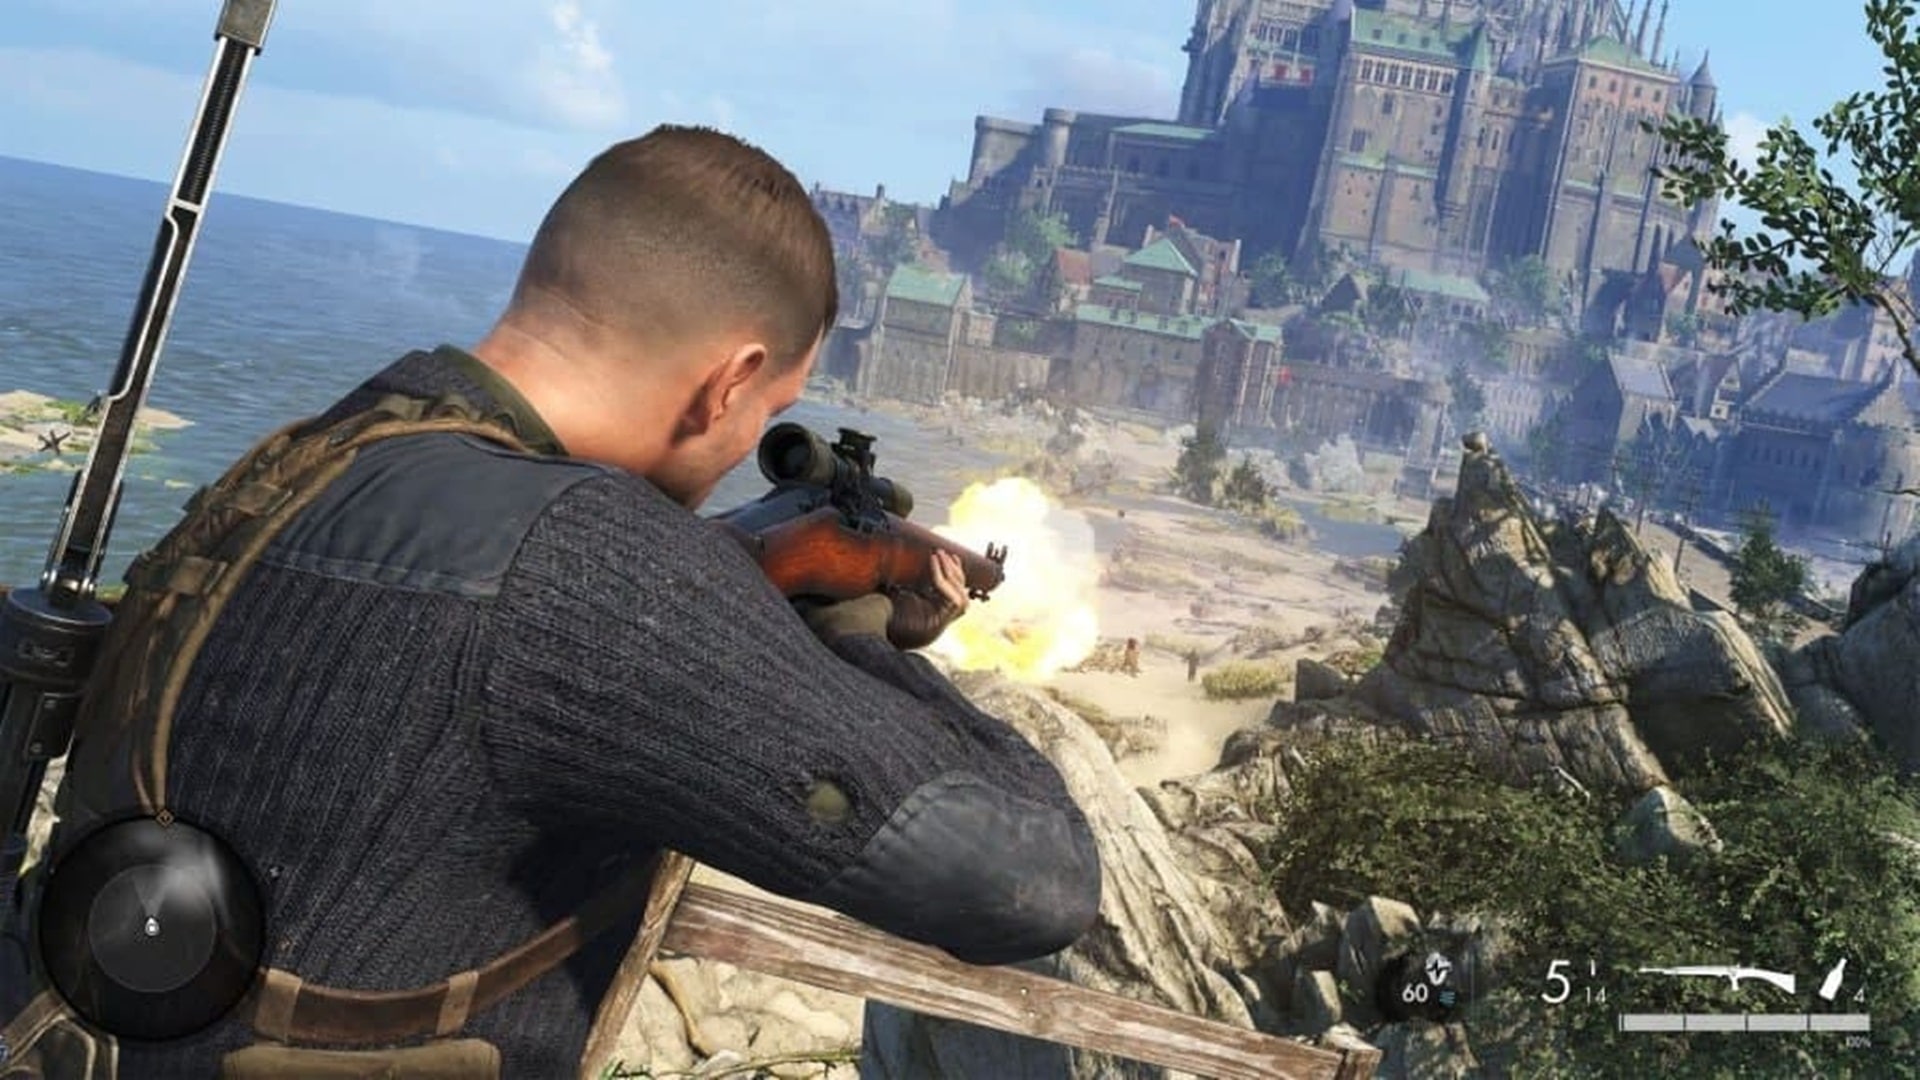 Sniper Elite 5: Los desarrolladores están eliminando algunos bugs, GamersRD